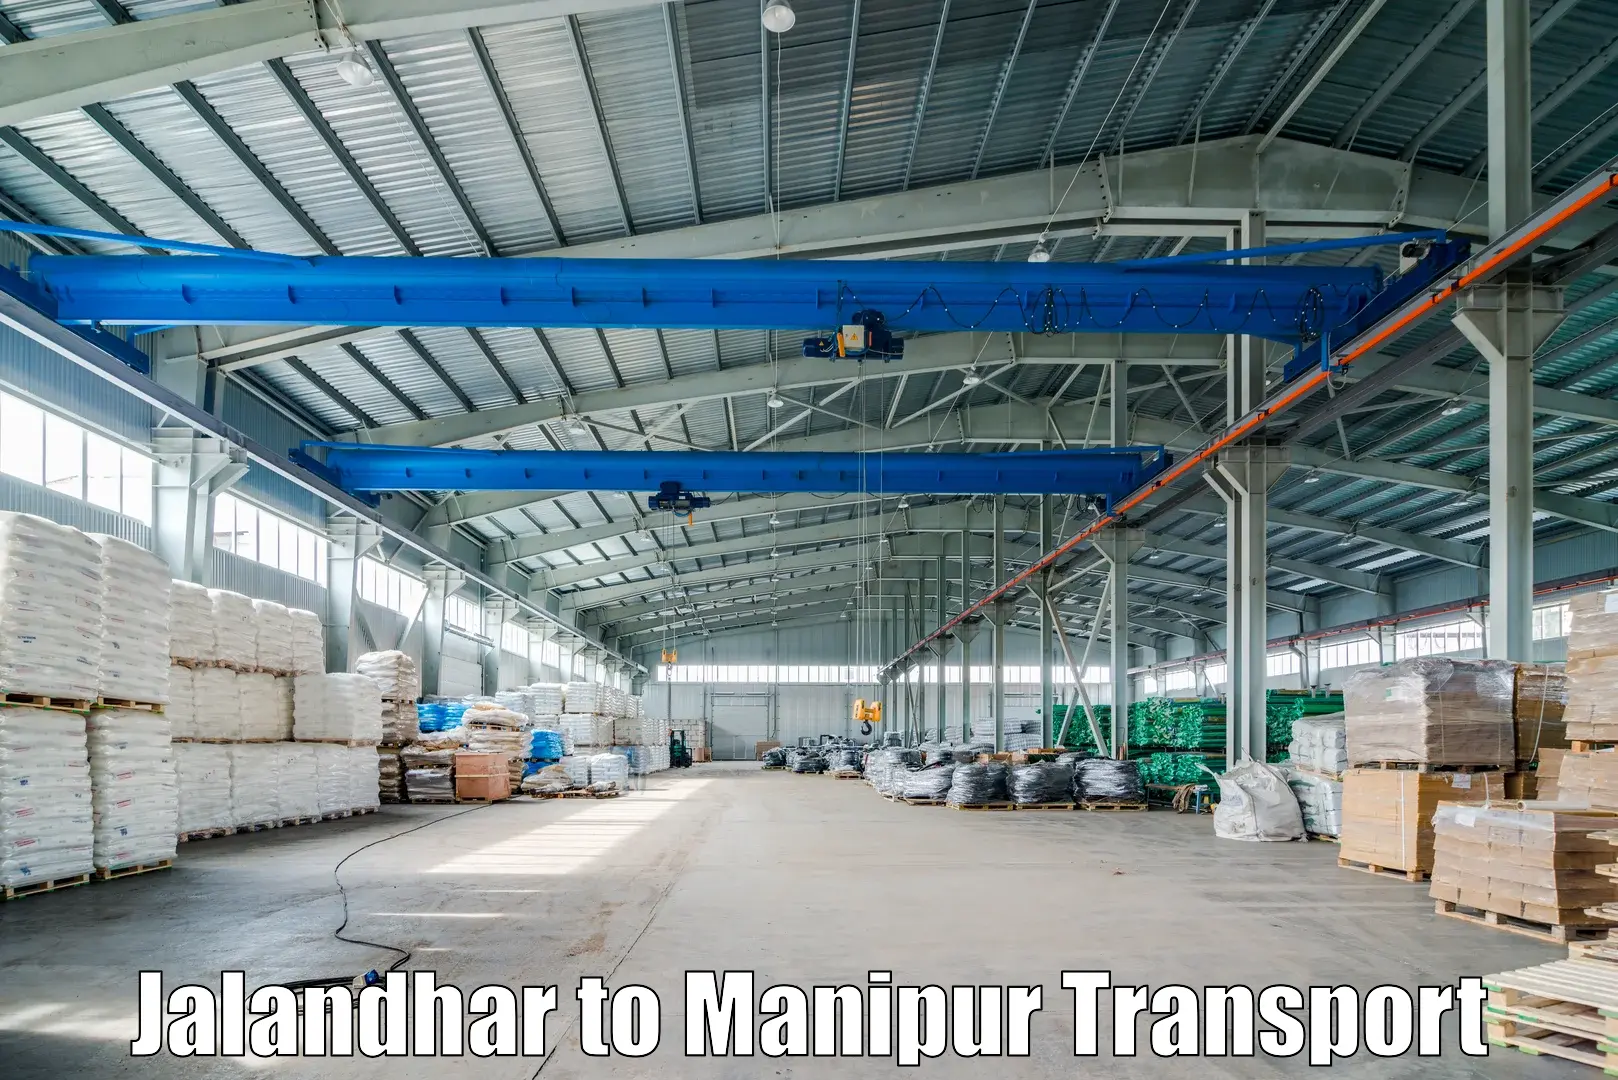 Express transport services Jalandhar to NIT Manipur